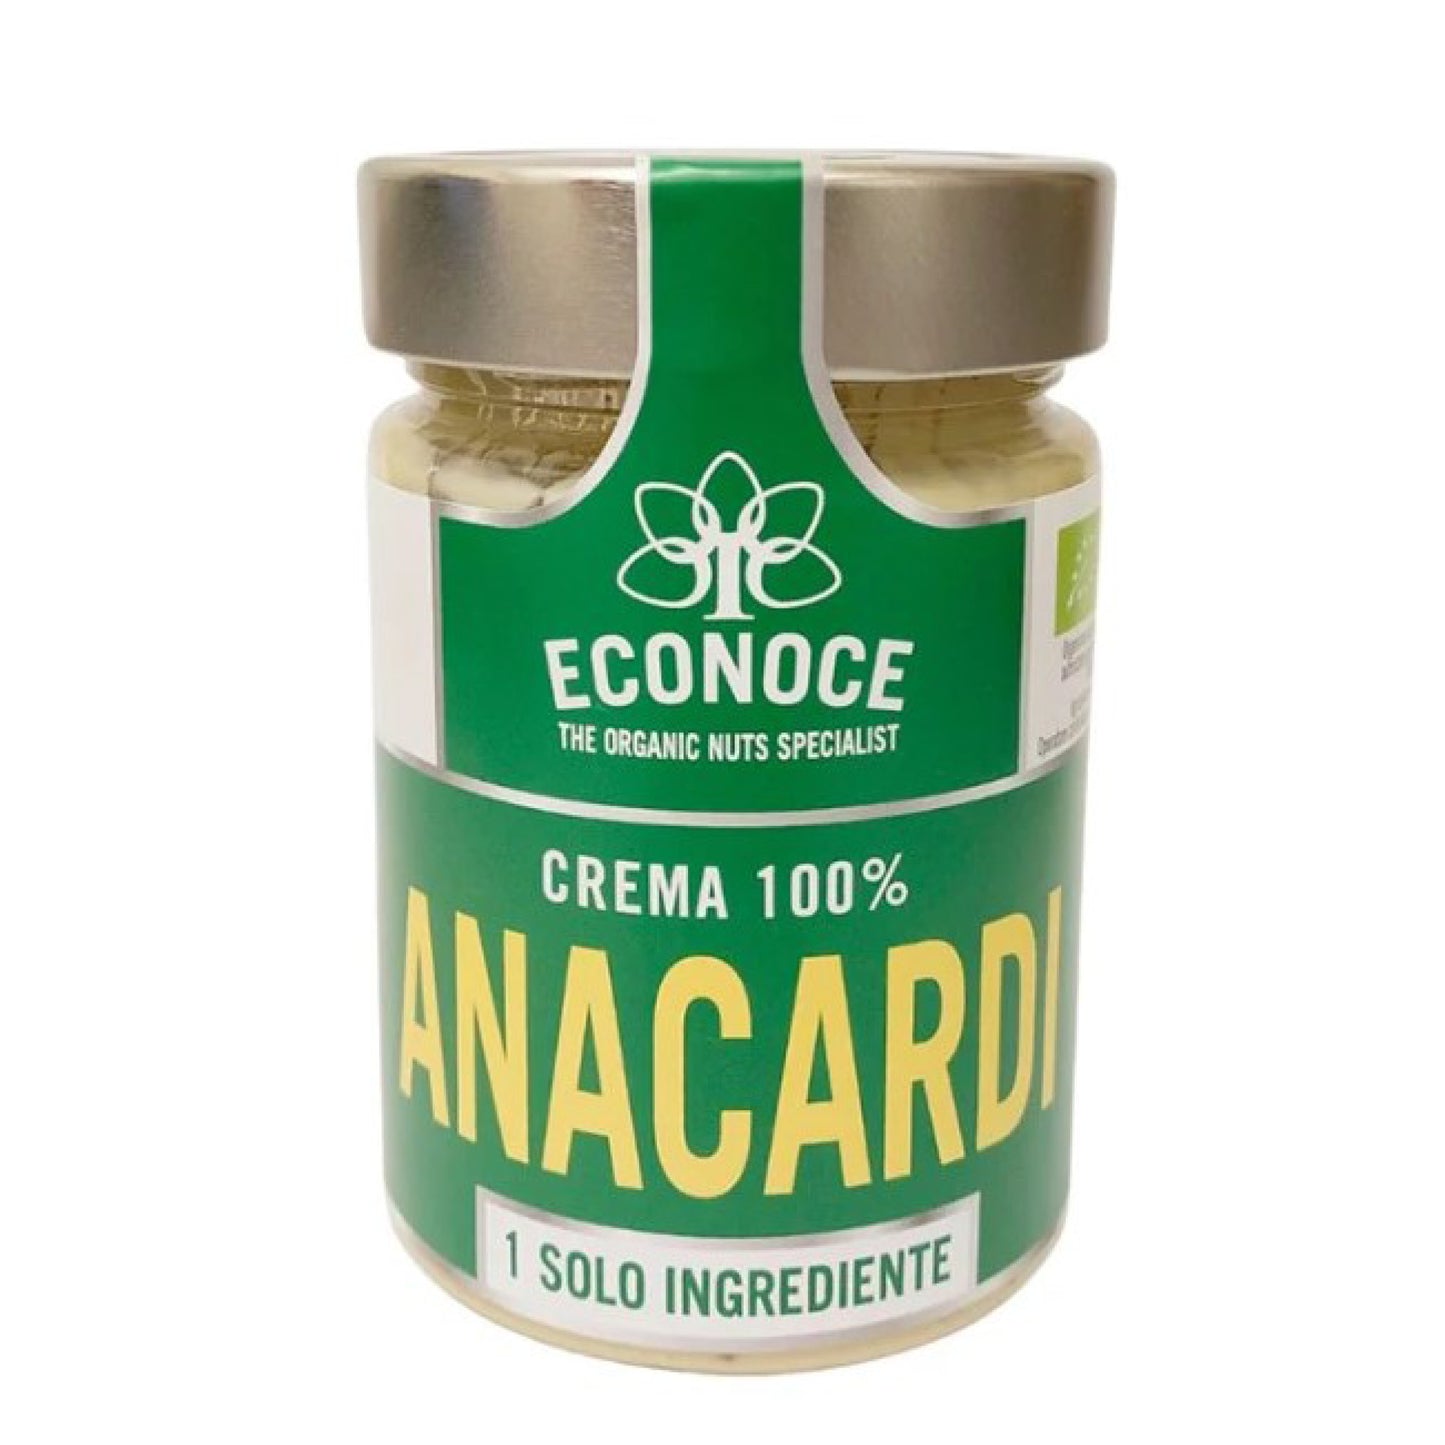 Crema 100% Anacardi 300g